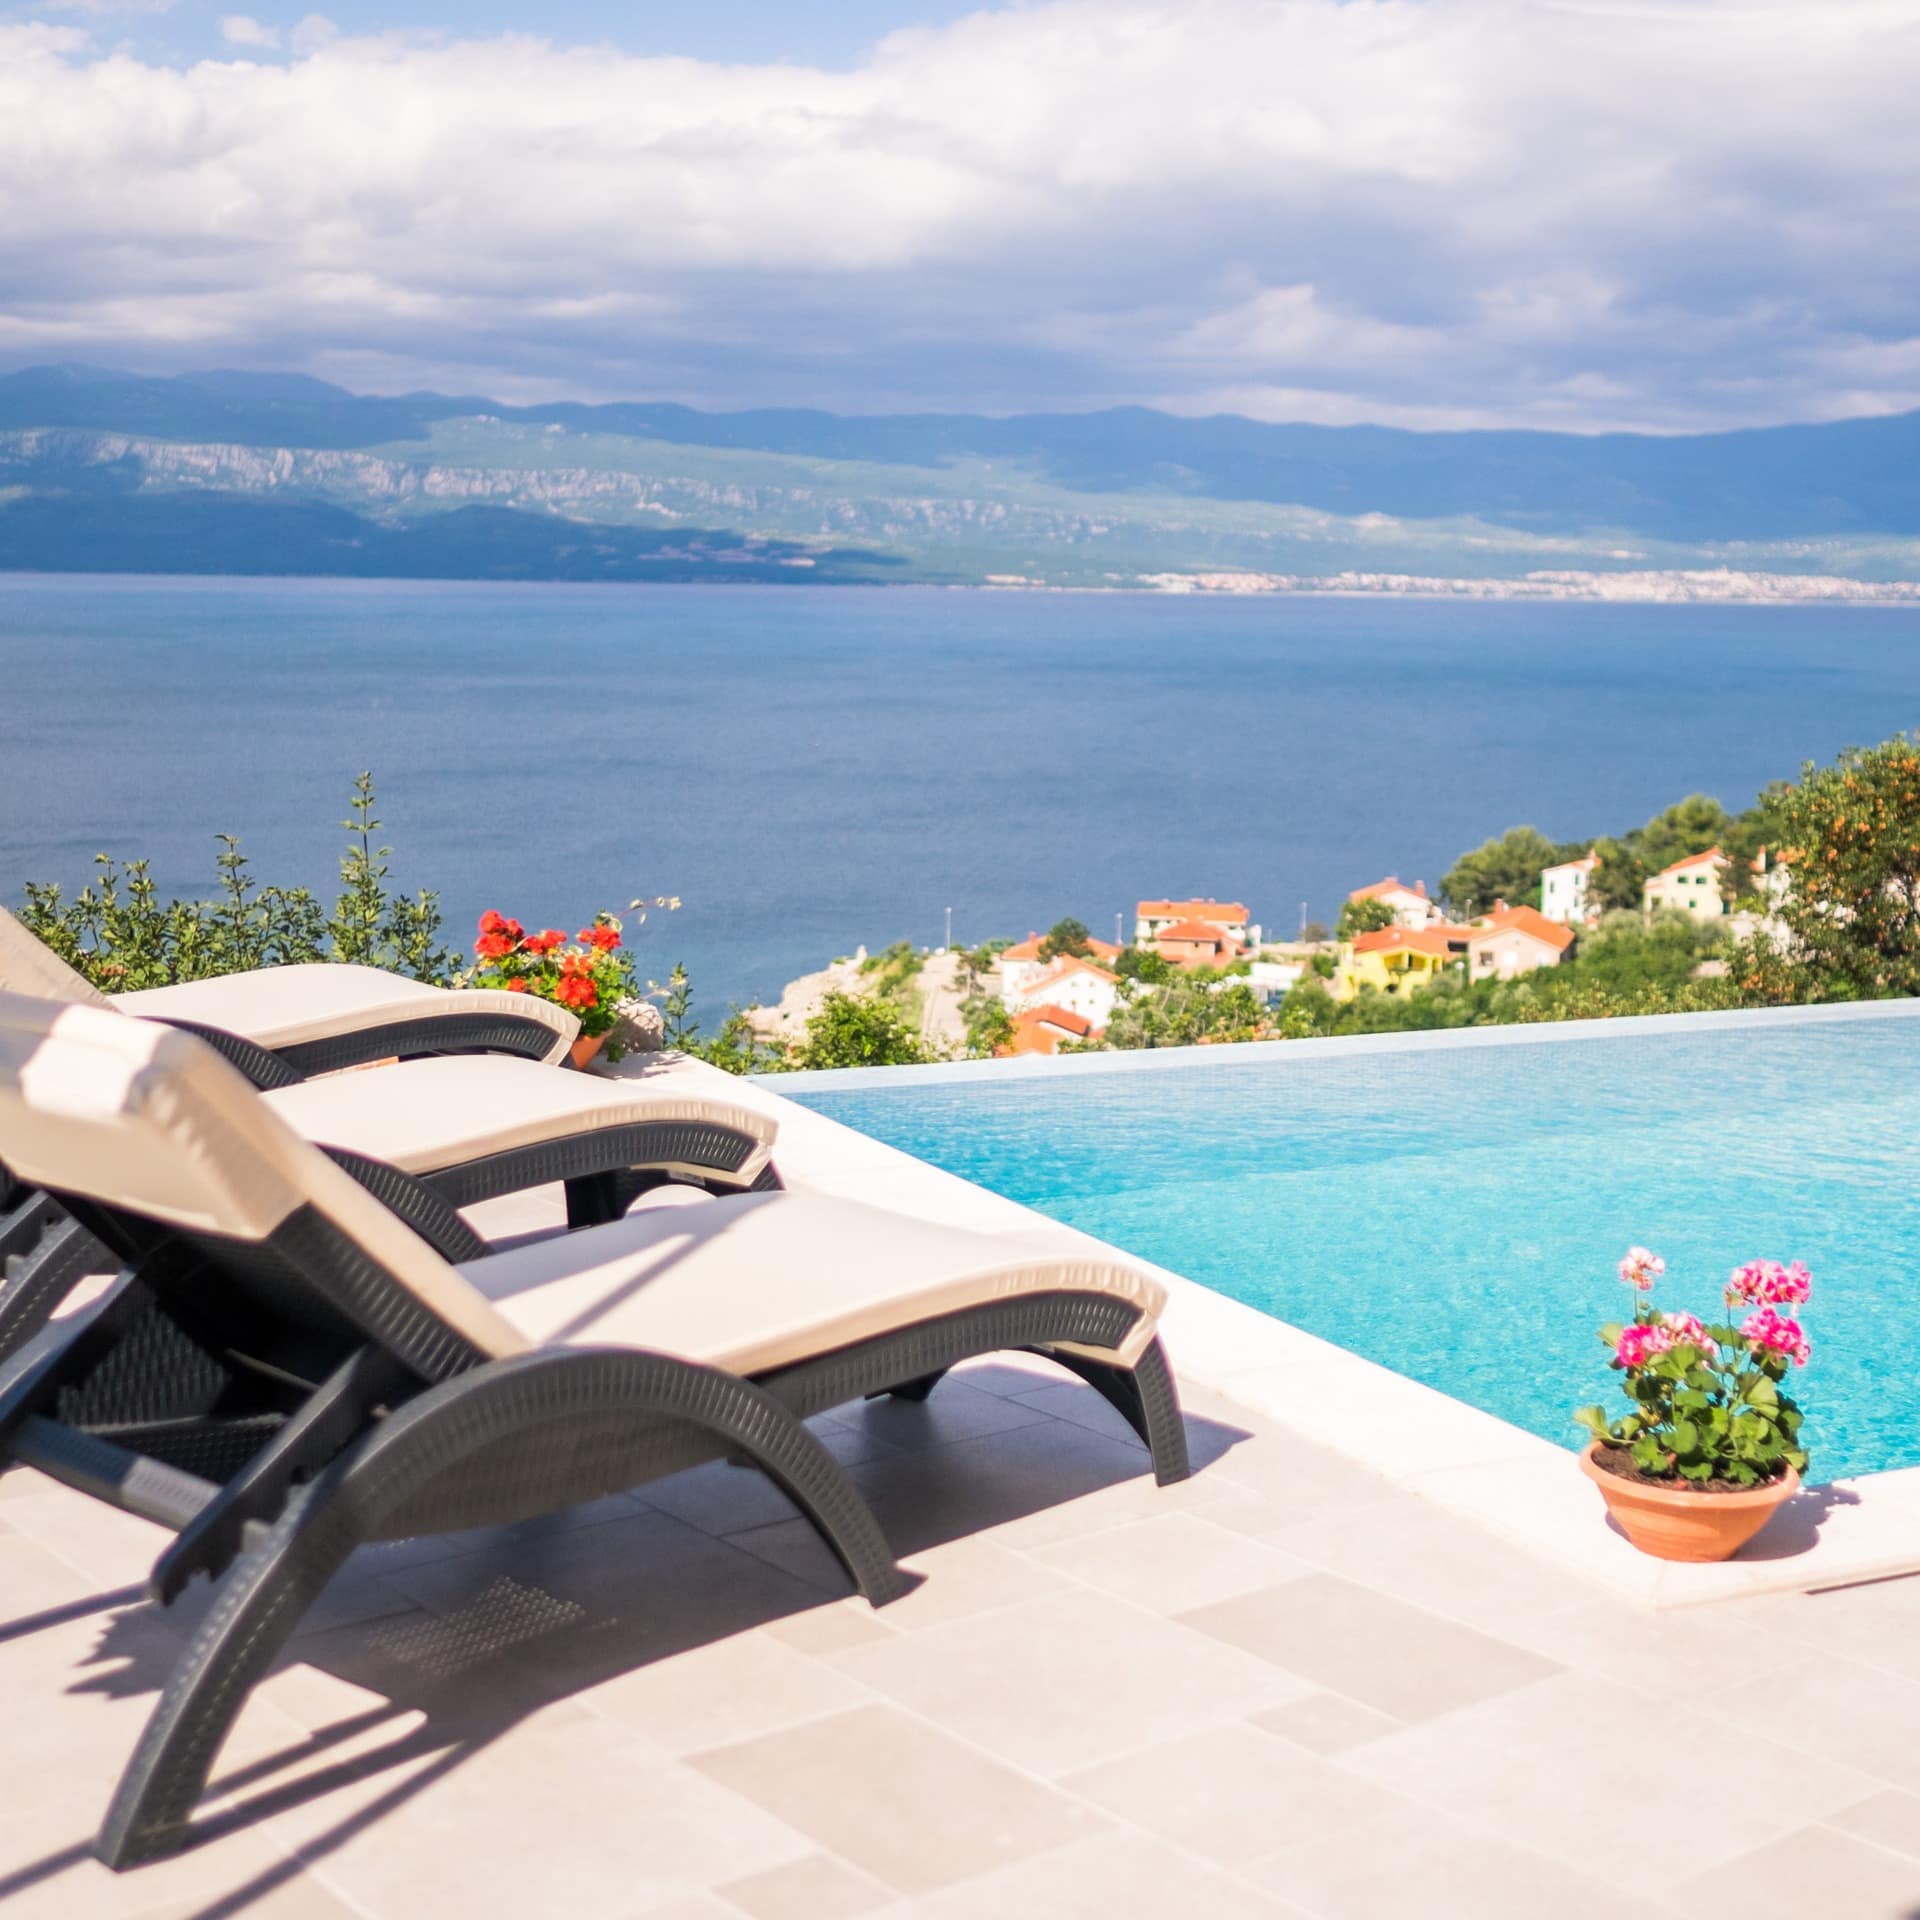 Grandioser Meerblick über den Dächern von Vrbnik in einer Luxus-Villa mit Infinity-Pool auf der Insel Krk